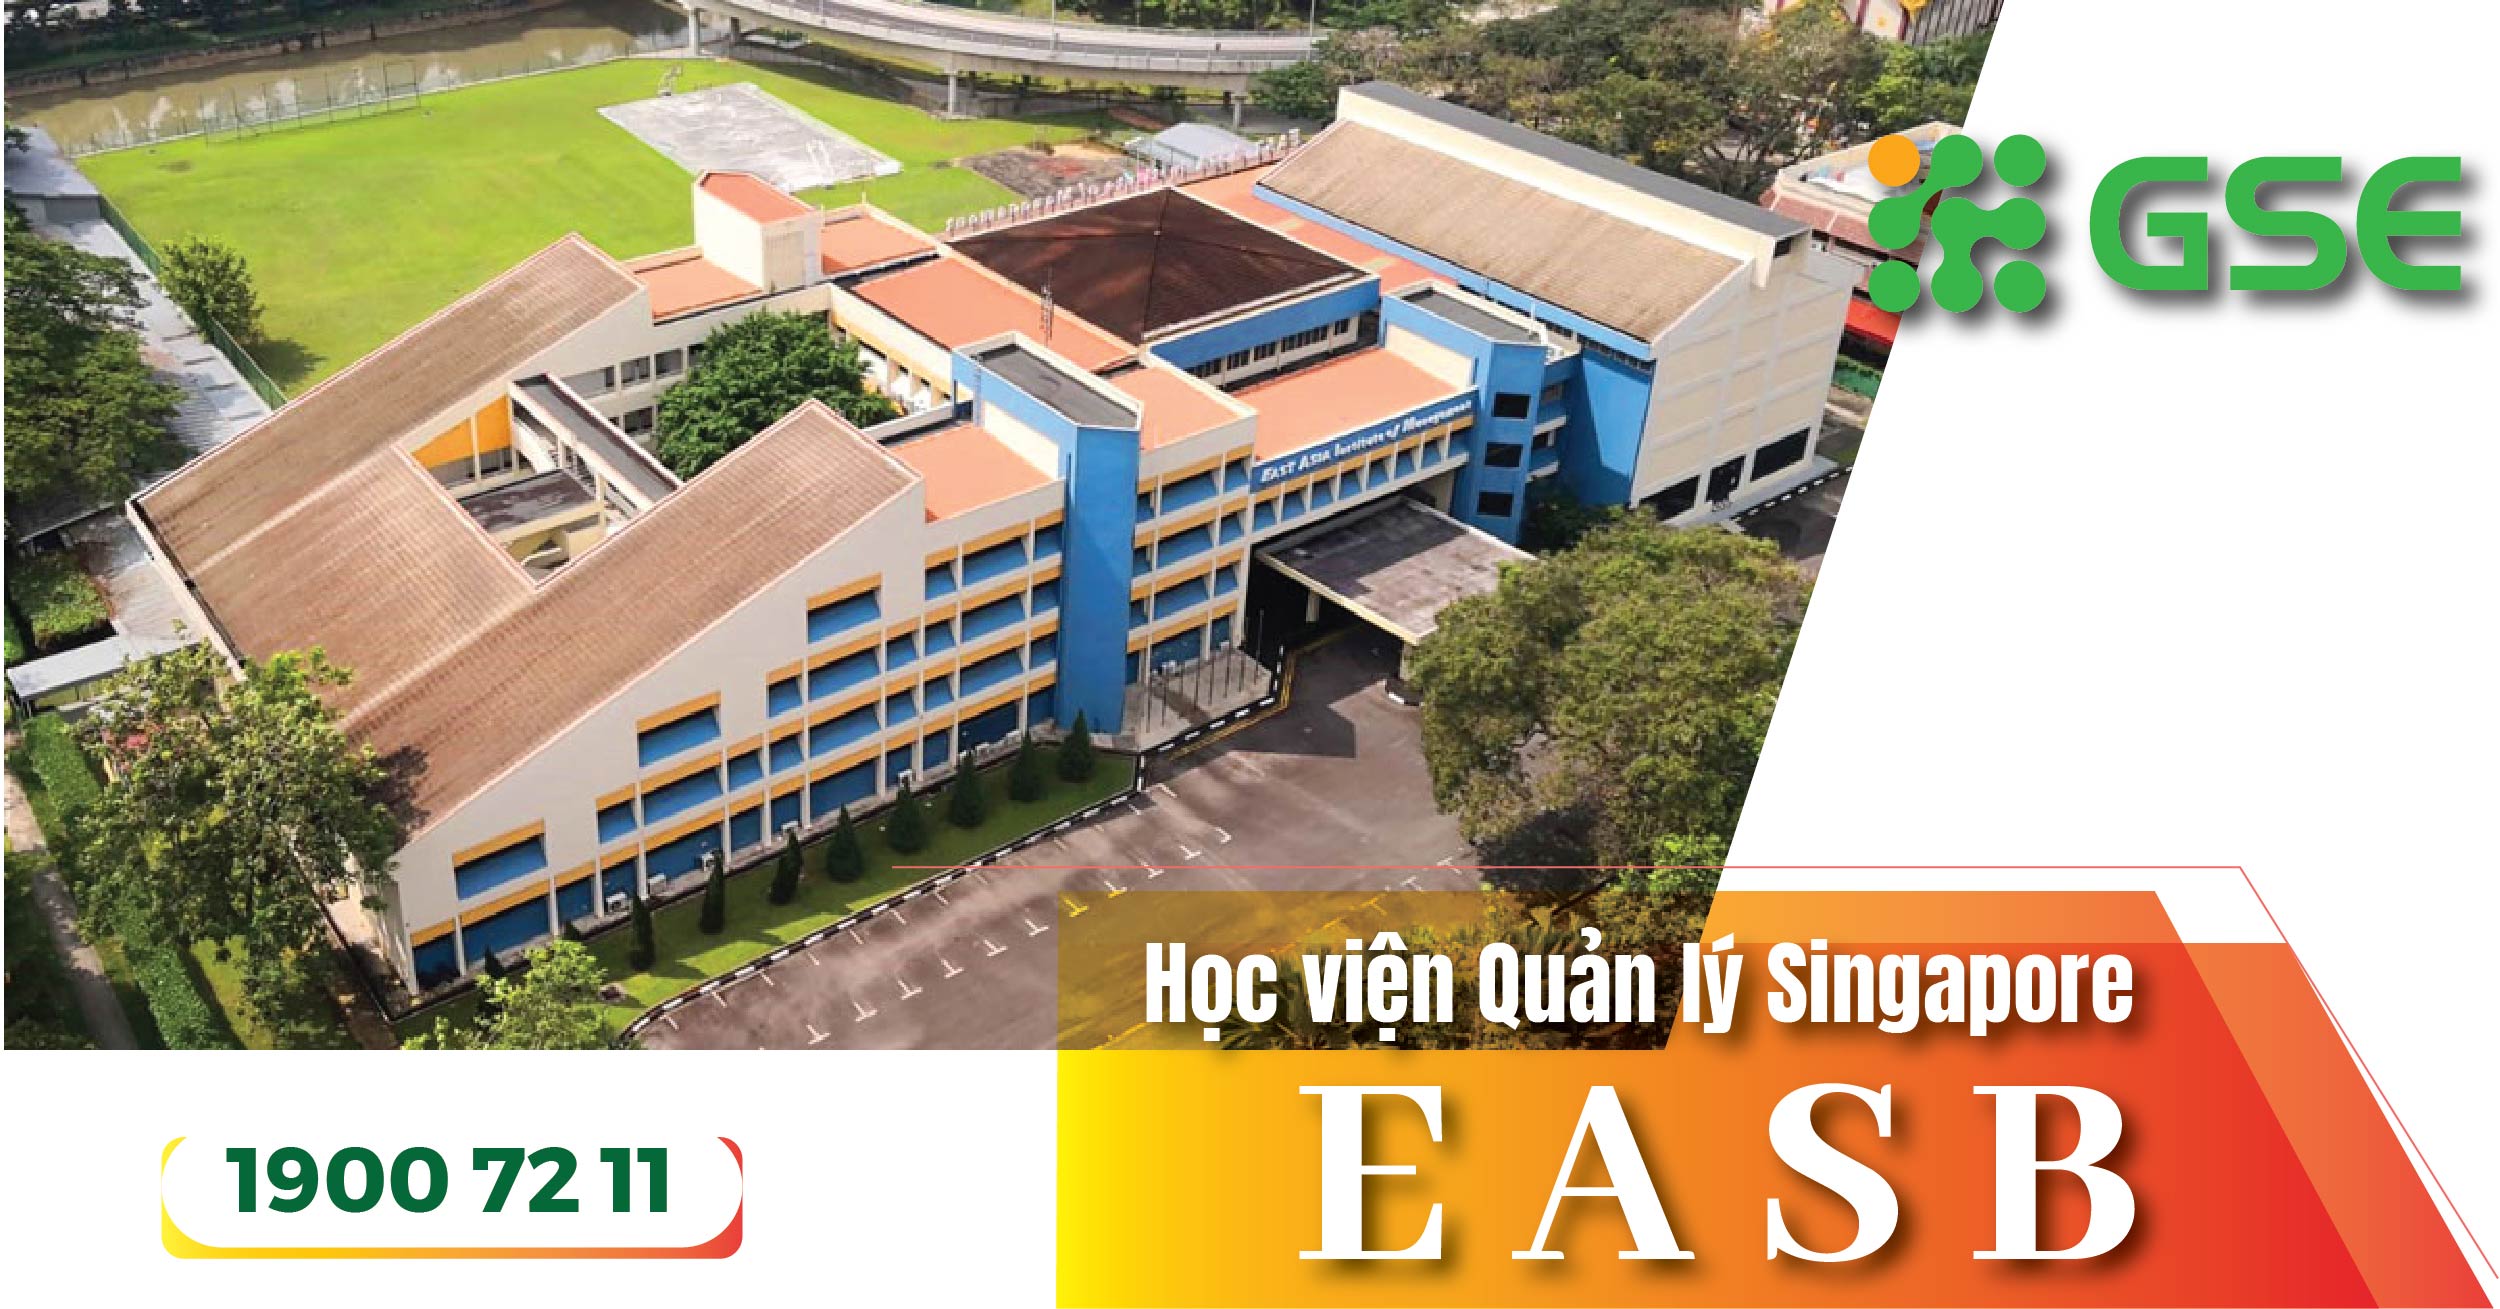 Học chương trình liên kết với Học viện Quản lý EASB Singapore